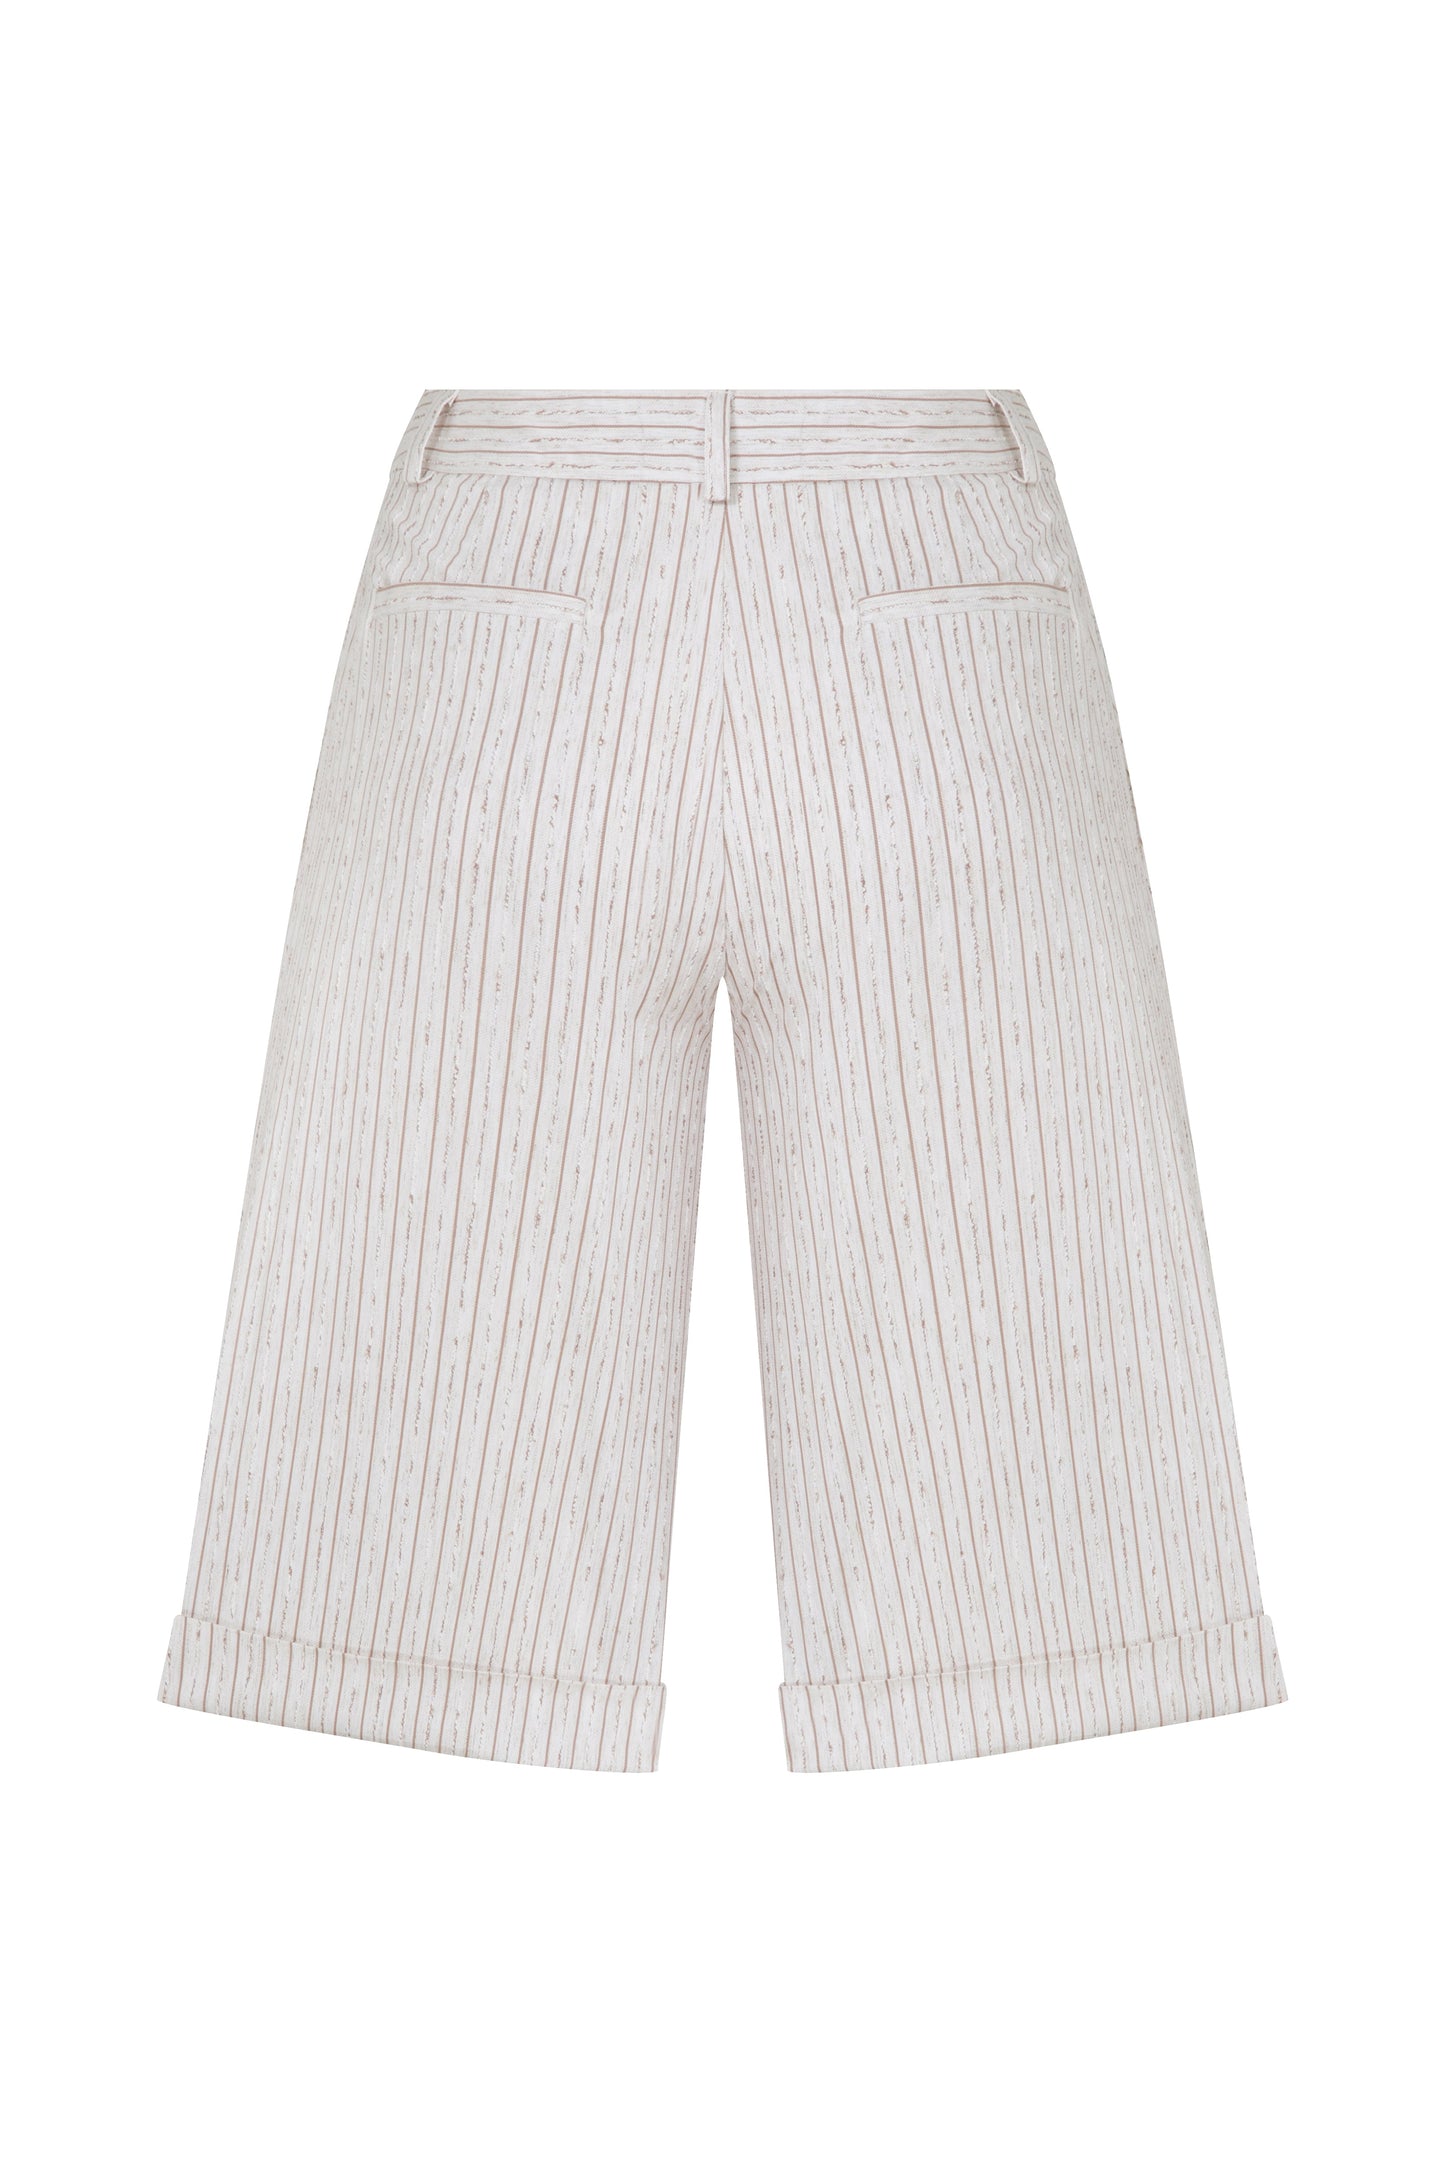 Marde Striped Linen Shorts in Walnut